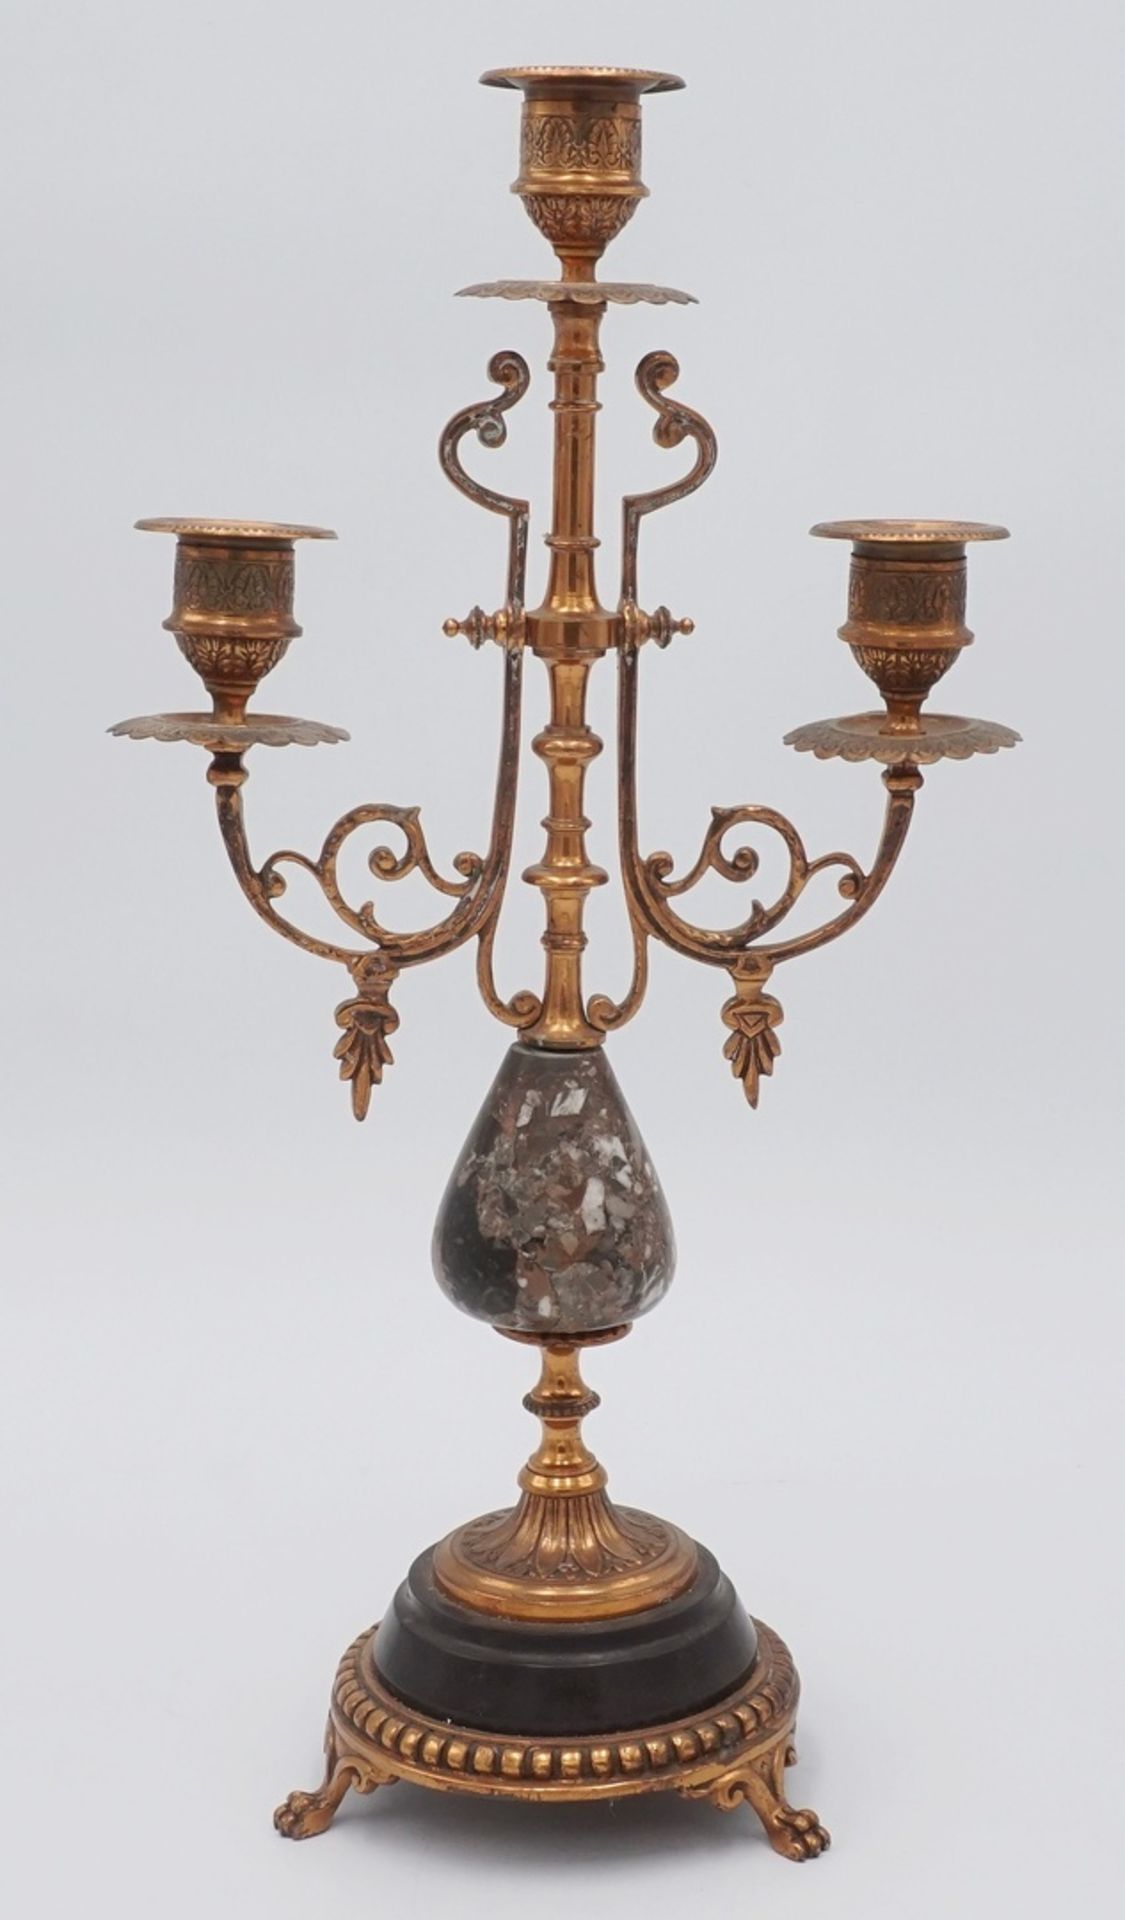 Tisch-Kandelaber, Leuchter, 2. Hälfte 18. Jh.Kupfer, Stein, dreiflammig, zwei geschwungene Arme zu